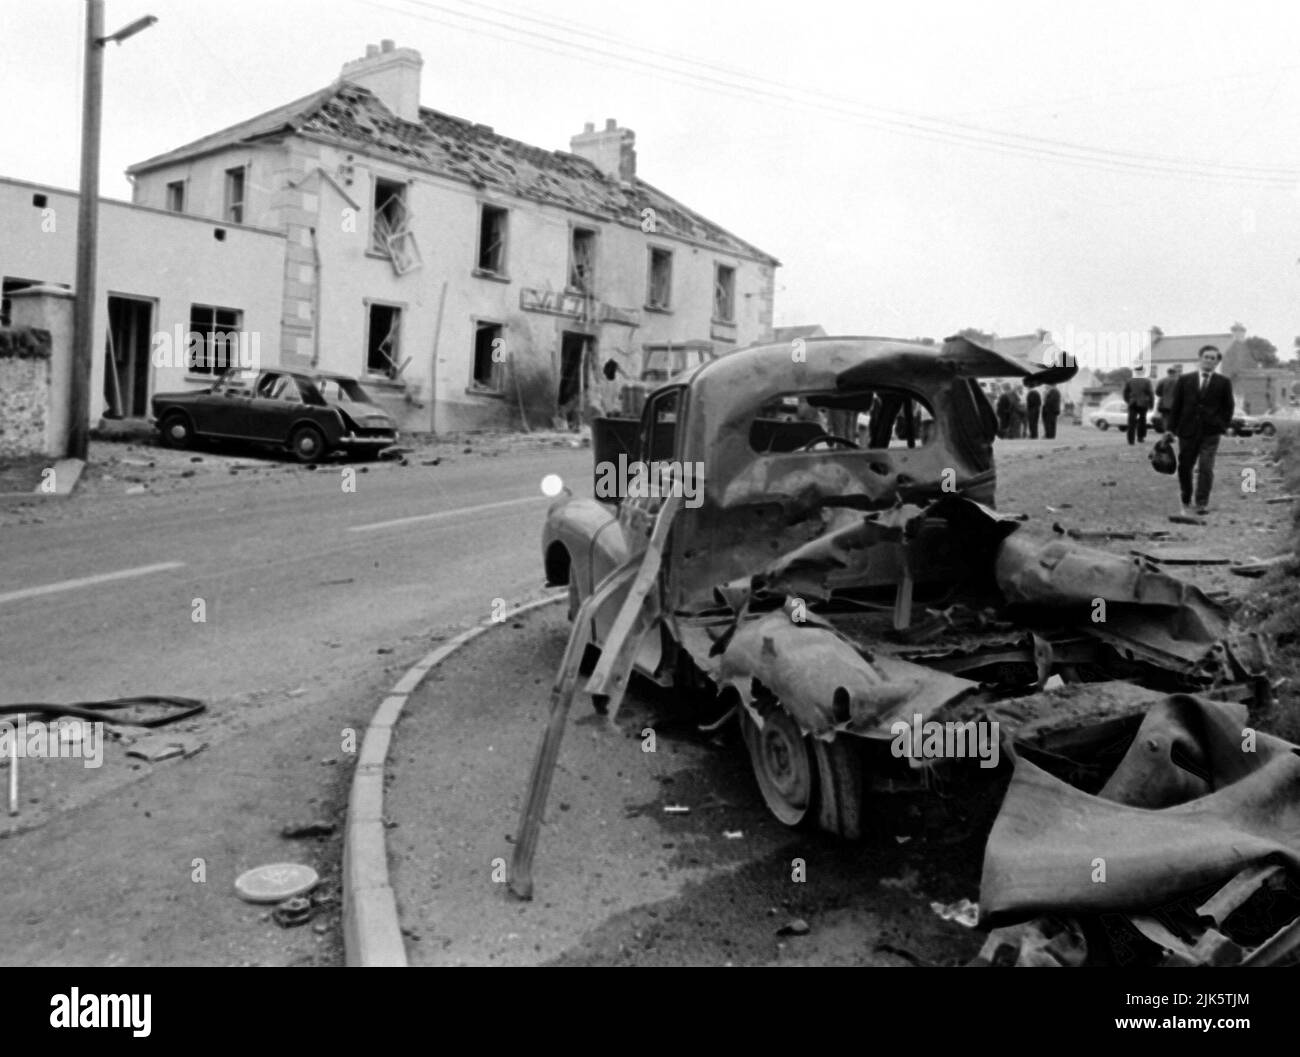 Aktenfoto vom 31/07/72 der Szene außerhalb der Beavpont Arms, im Dorf Claudy im Co Londonderry am 31. Juli 1972, nachdem drei Autobomben explodierten und neun Menschen getötet hatten. Überlebende und Familien der bei den Bombenanschlägen von Claudy vor 50 Jahren Getöteten werden sich später zum Jahrestag im ruhigen Dorf Co Londonderry versammeln. Stockfoto